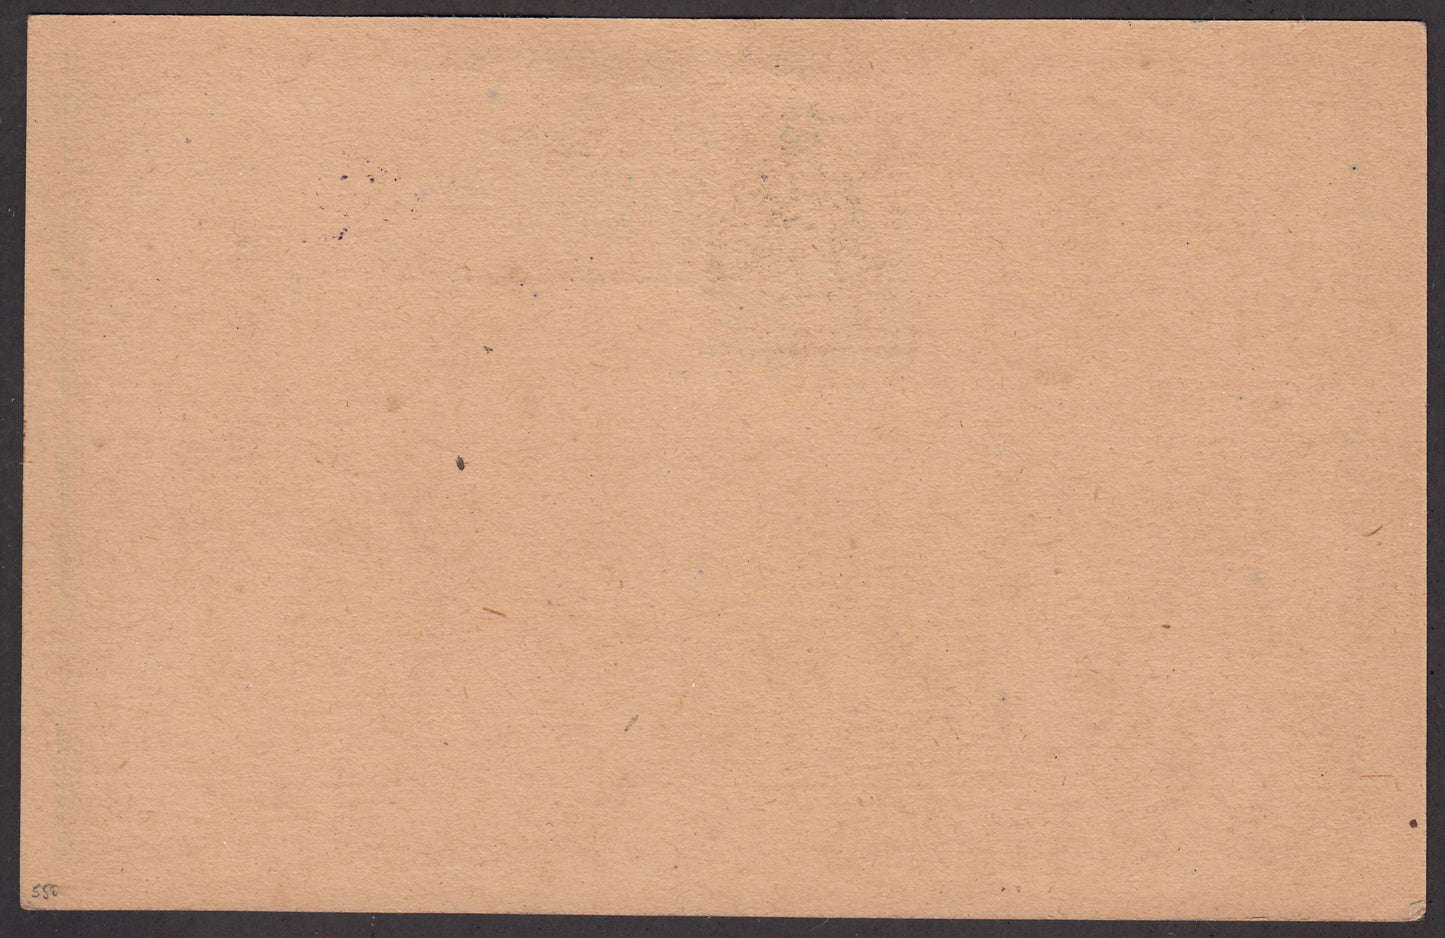 MERSP28 - 1918 - Intero postale da 8 heller integrato da espresso d'Austria e da Merano 5 heller azzurro scuro (7).